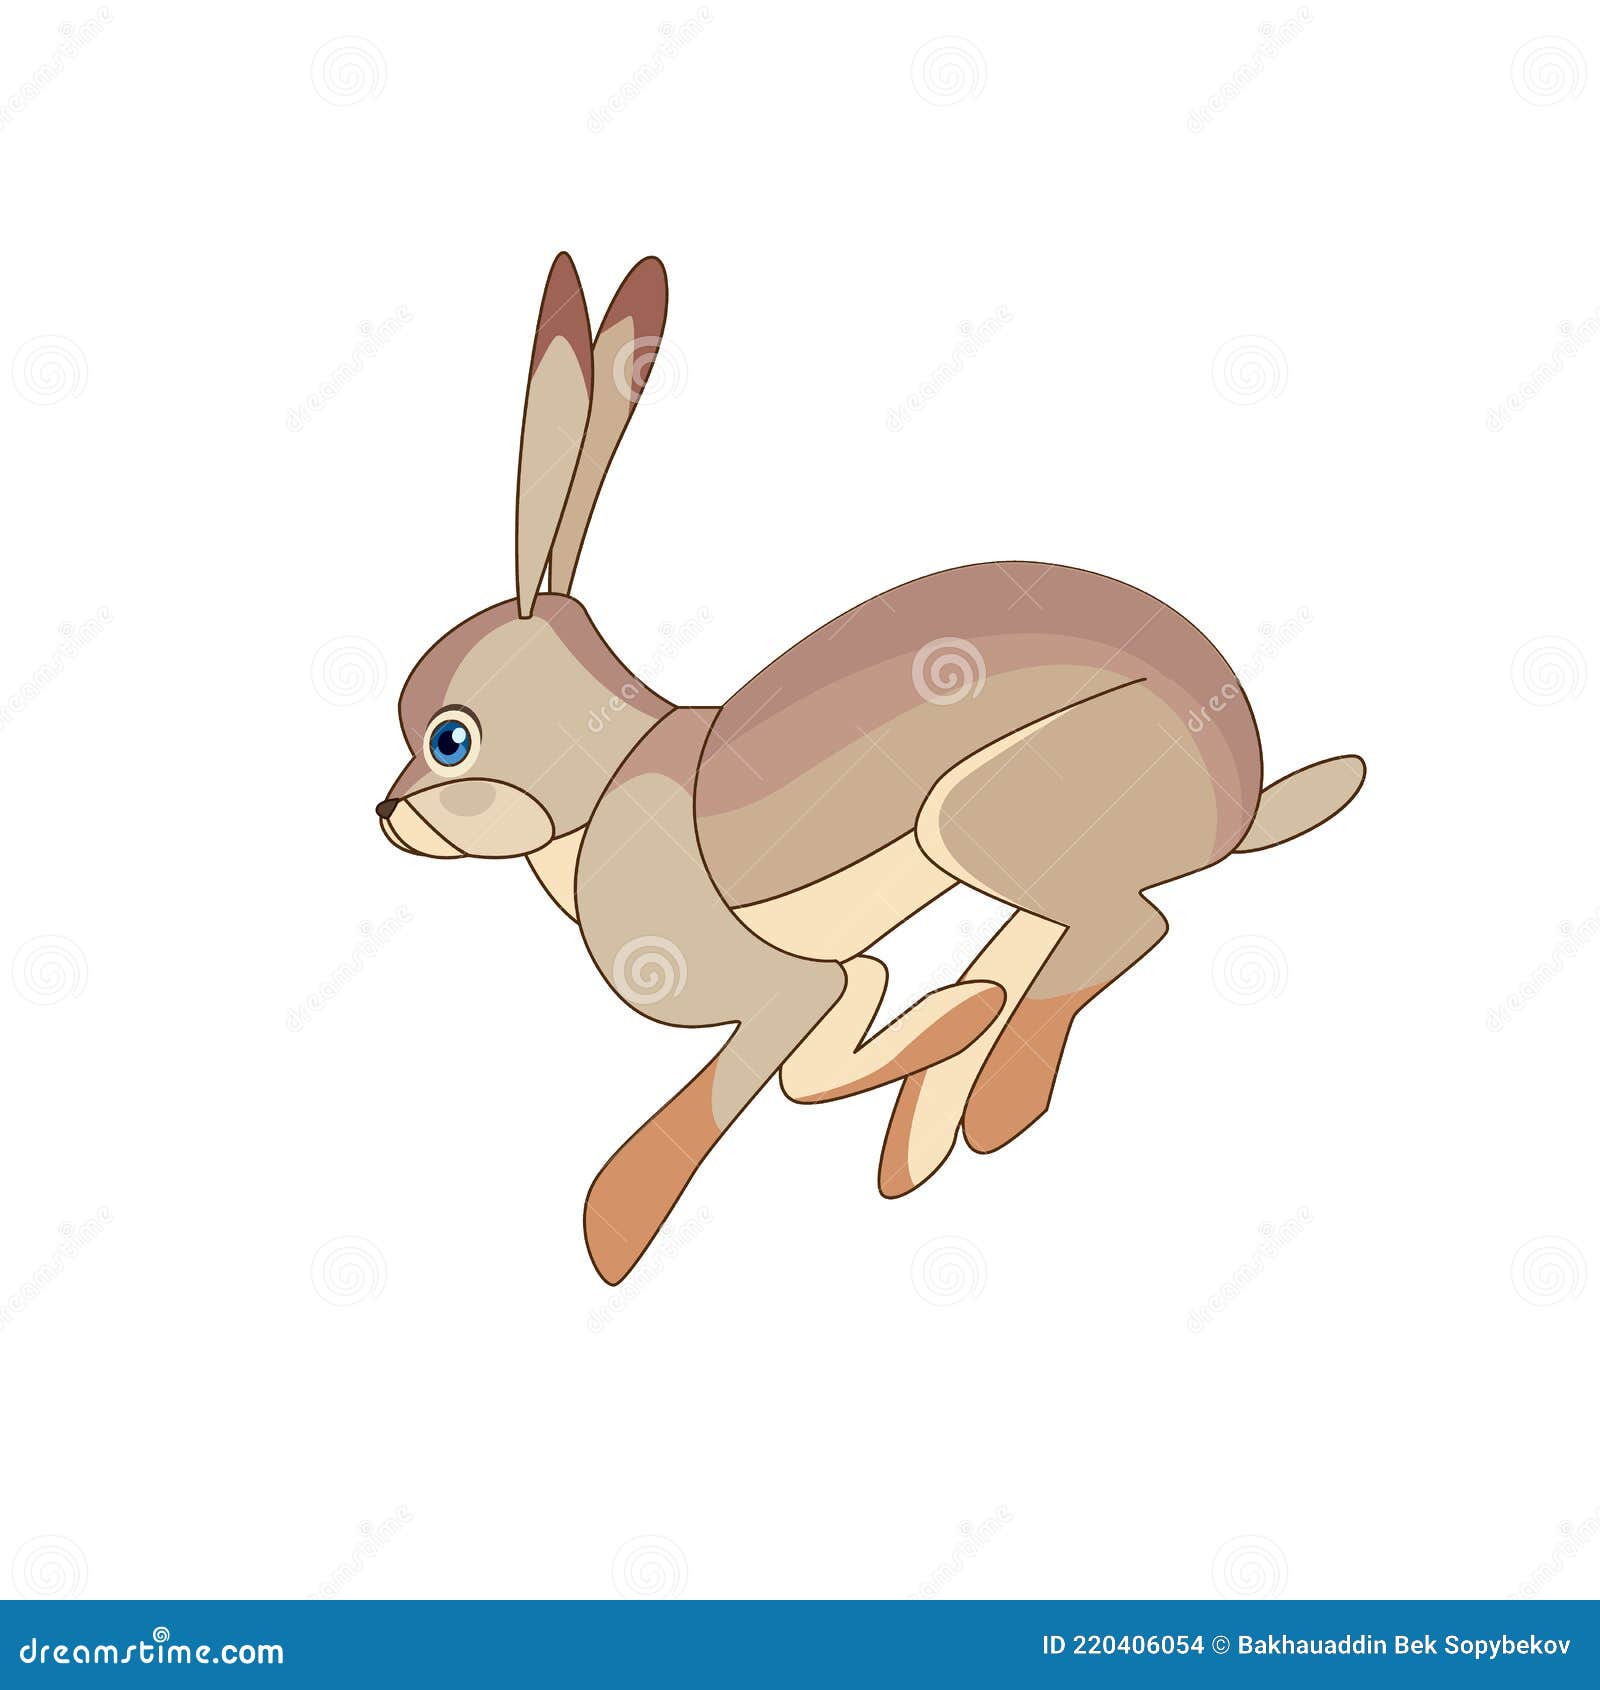 Desert Hare Stock Illustrations – 73 Desert Hare Stock Illustrations,  Vectors & Clipart - Dreamstime